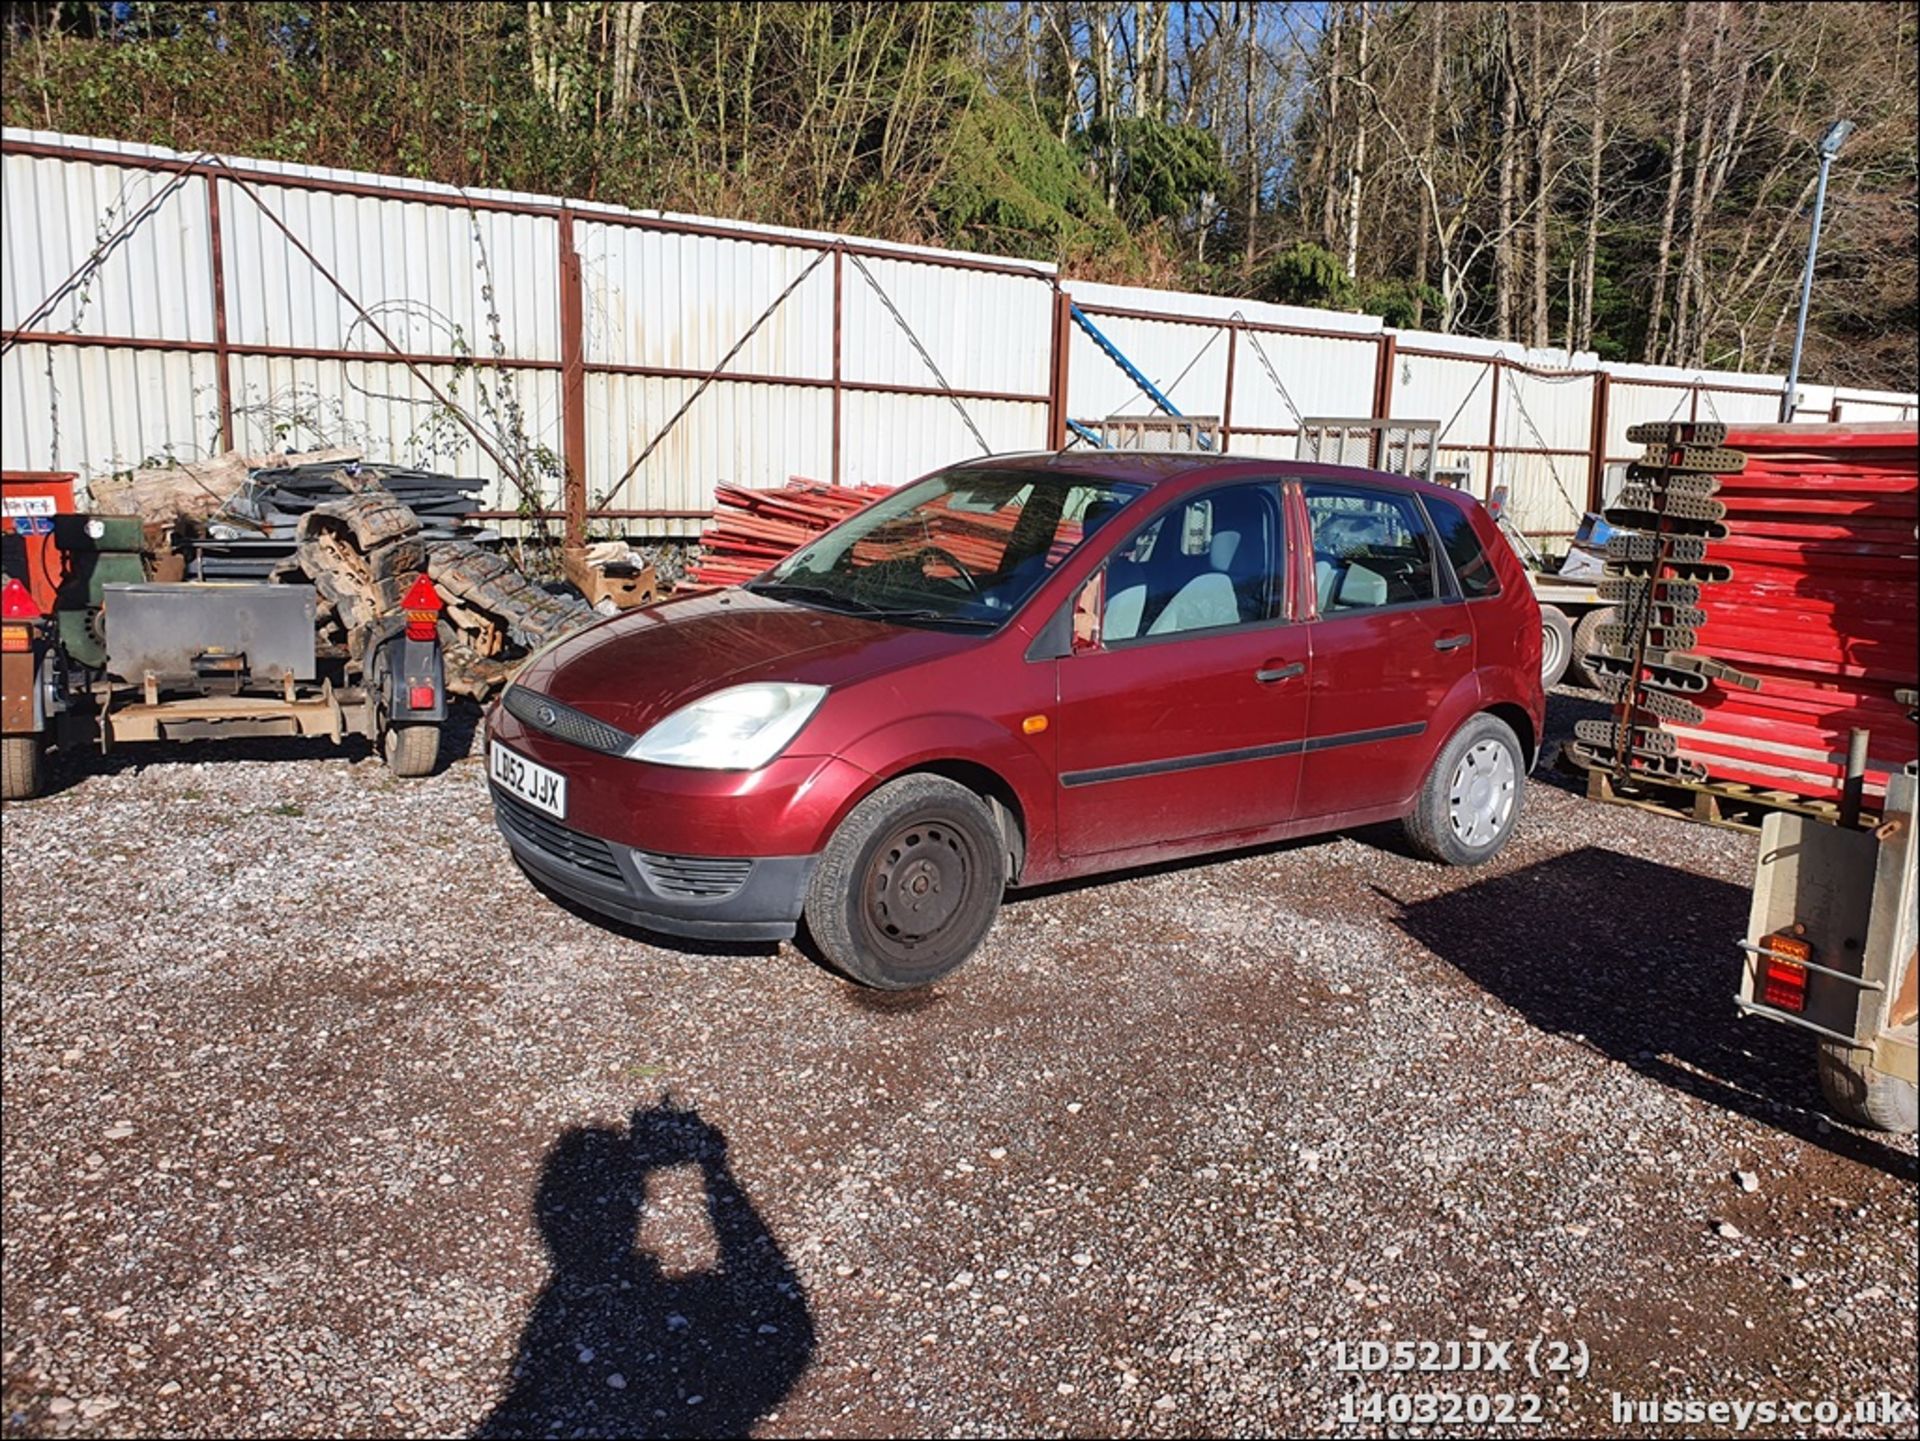 02/52 FORD FIESTA LX - 1388cc 5dr Hatchback (Red, 37k) - Image 3 of 27